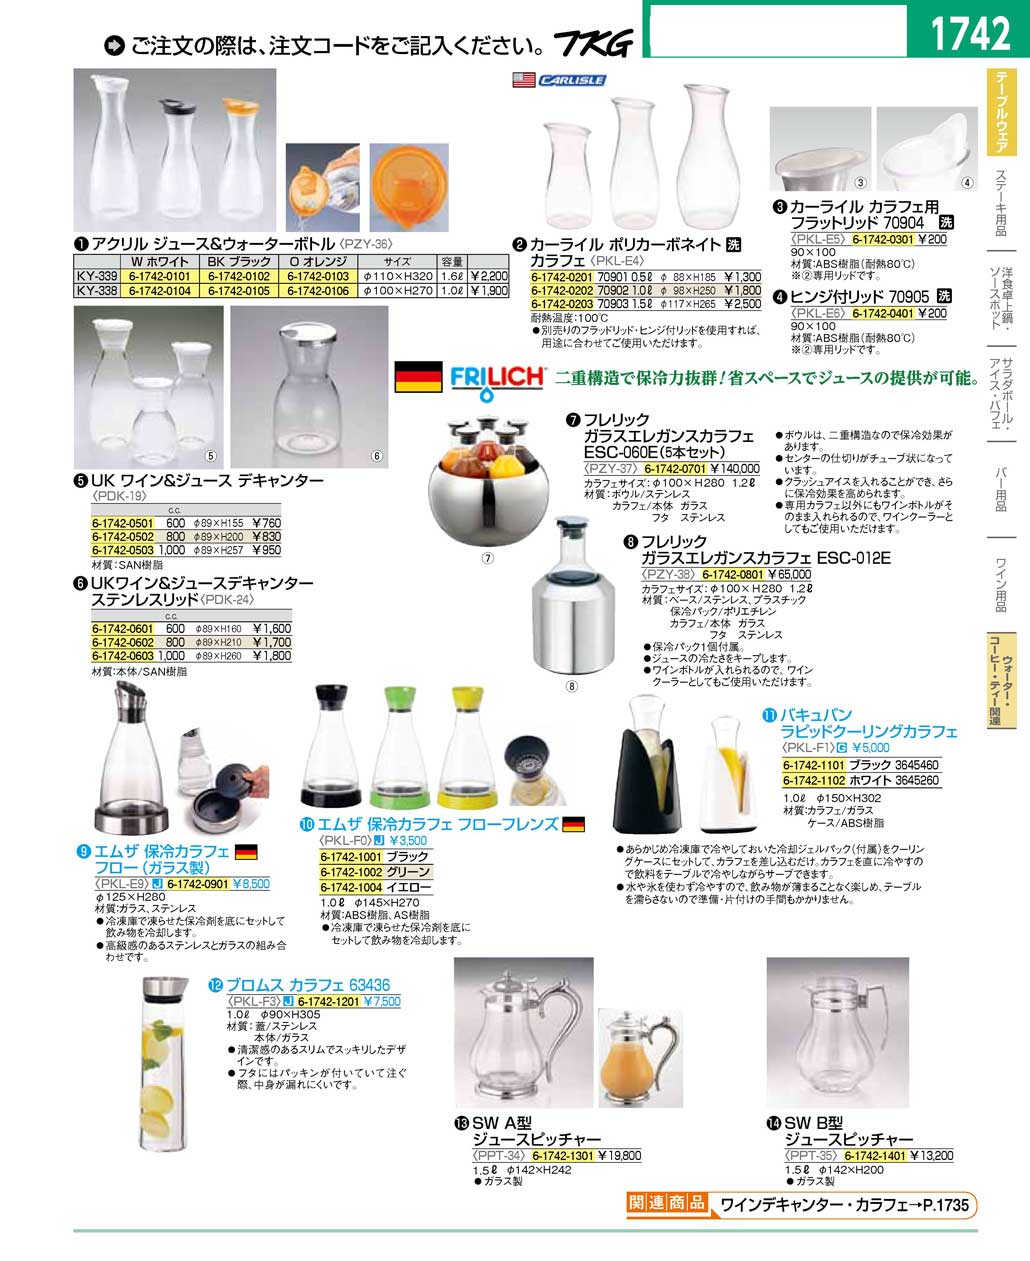 25561円 特別価格 フレリック FRILICH ガラスエレガンスカラフェ ESC-012E PZY3801